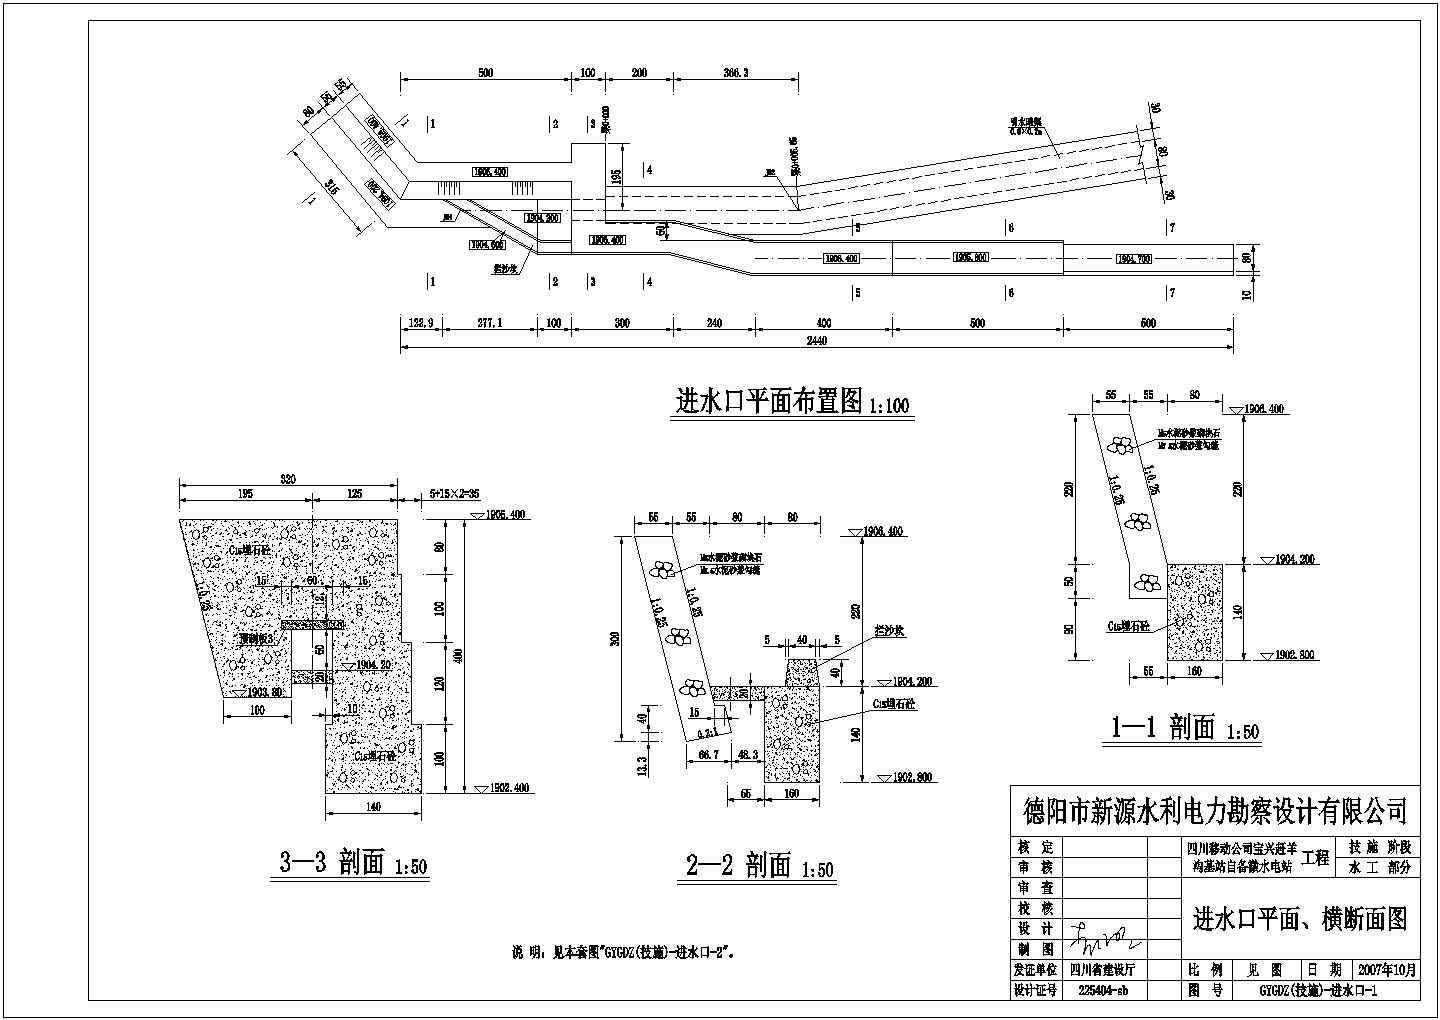 宝兴县陇东镇赶羊沟移动基站水电站(10KW)供电工程设计图